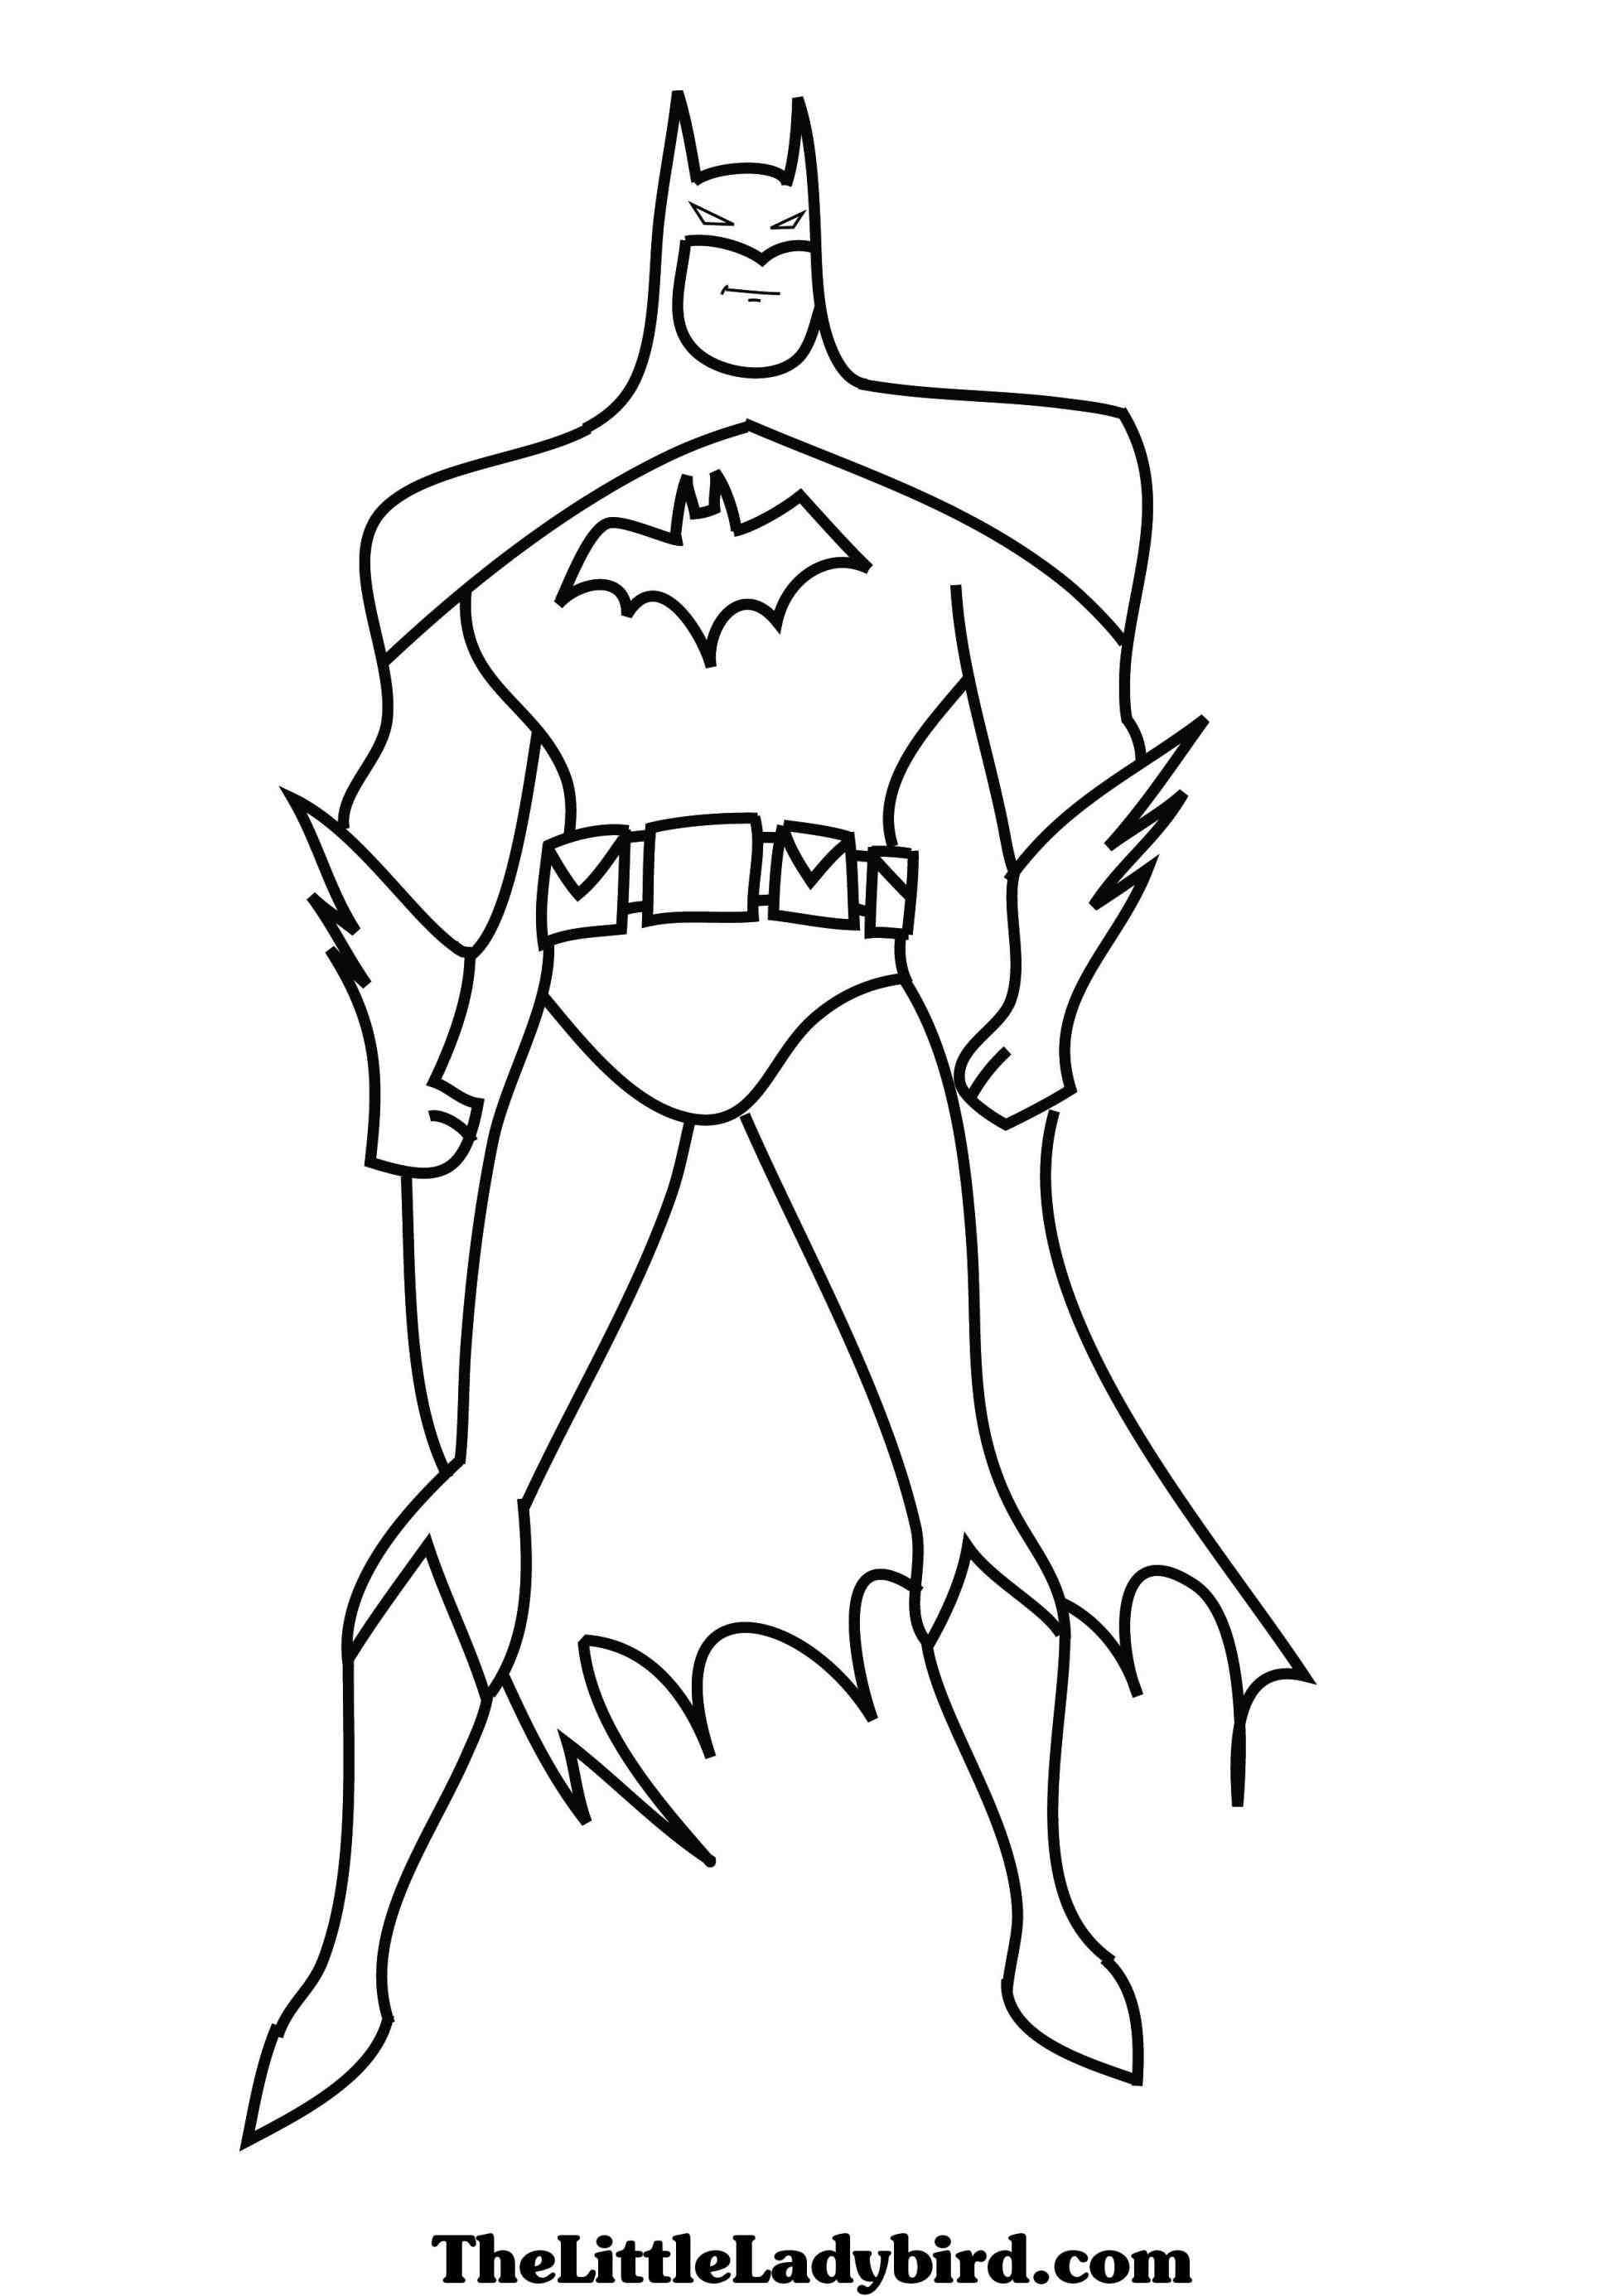 colouring pictures of batman batman coloring pictures pages for kids coloring pictures colouring of pictures batman 